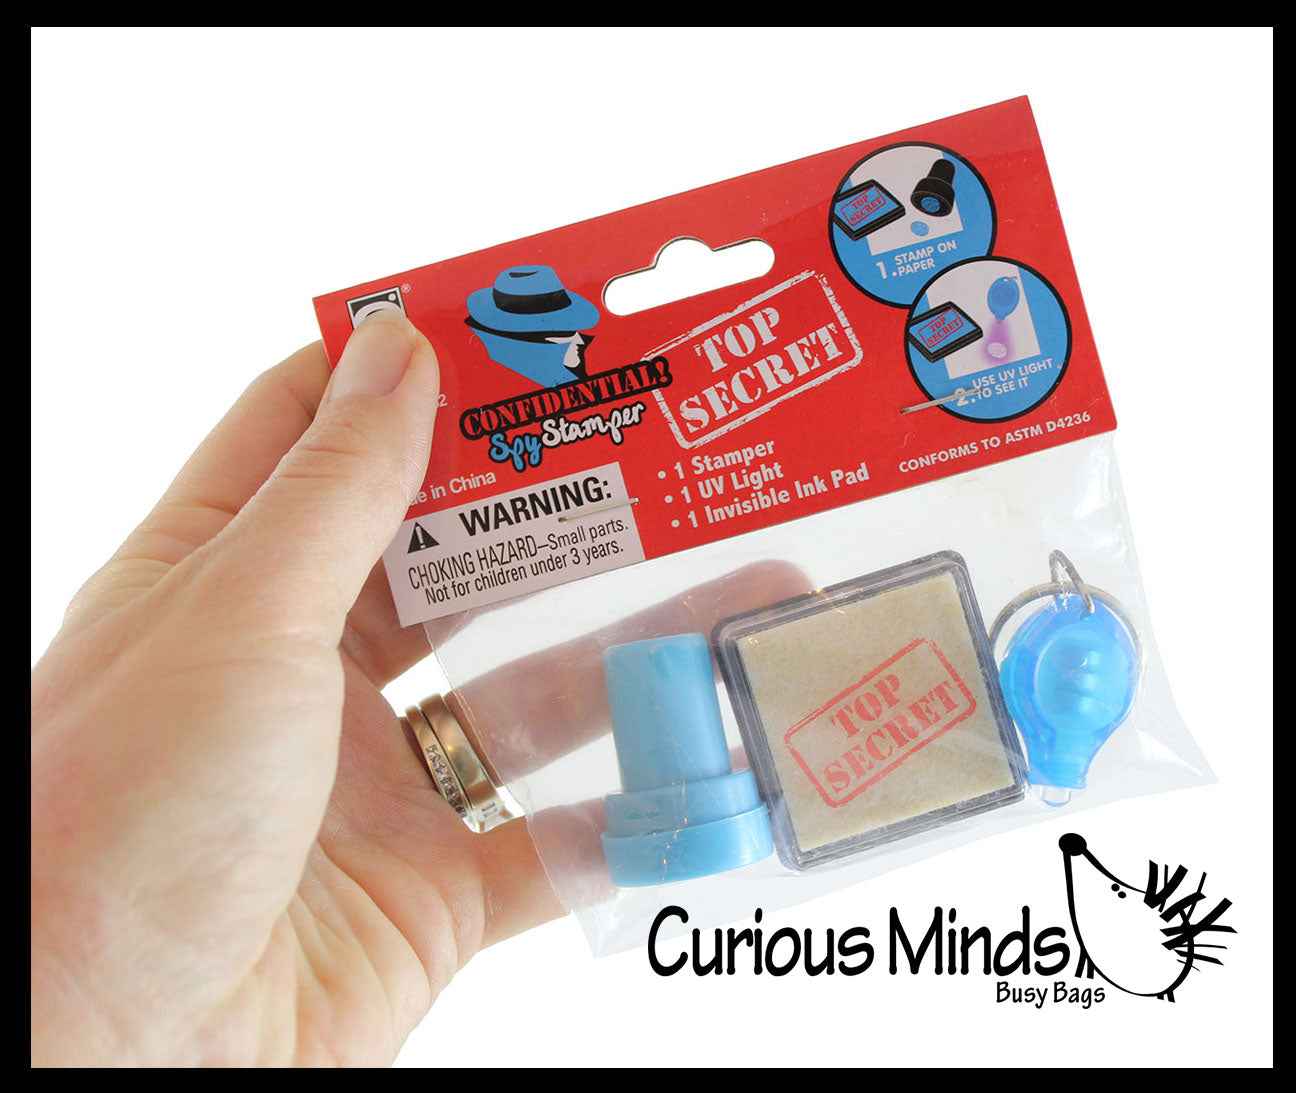 Spy Stamp Set - Secret Message Spy Marker Ink, Stamper, with Flash Light - Hidden Message Pen - Invisible Ink and UV Light